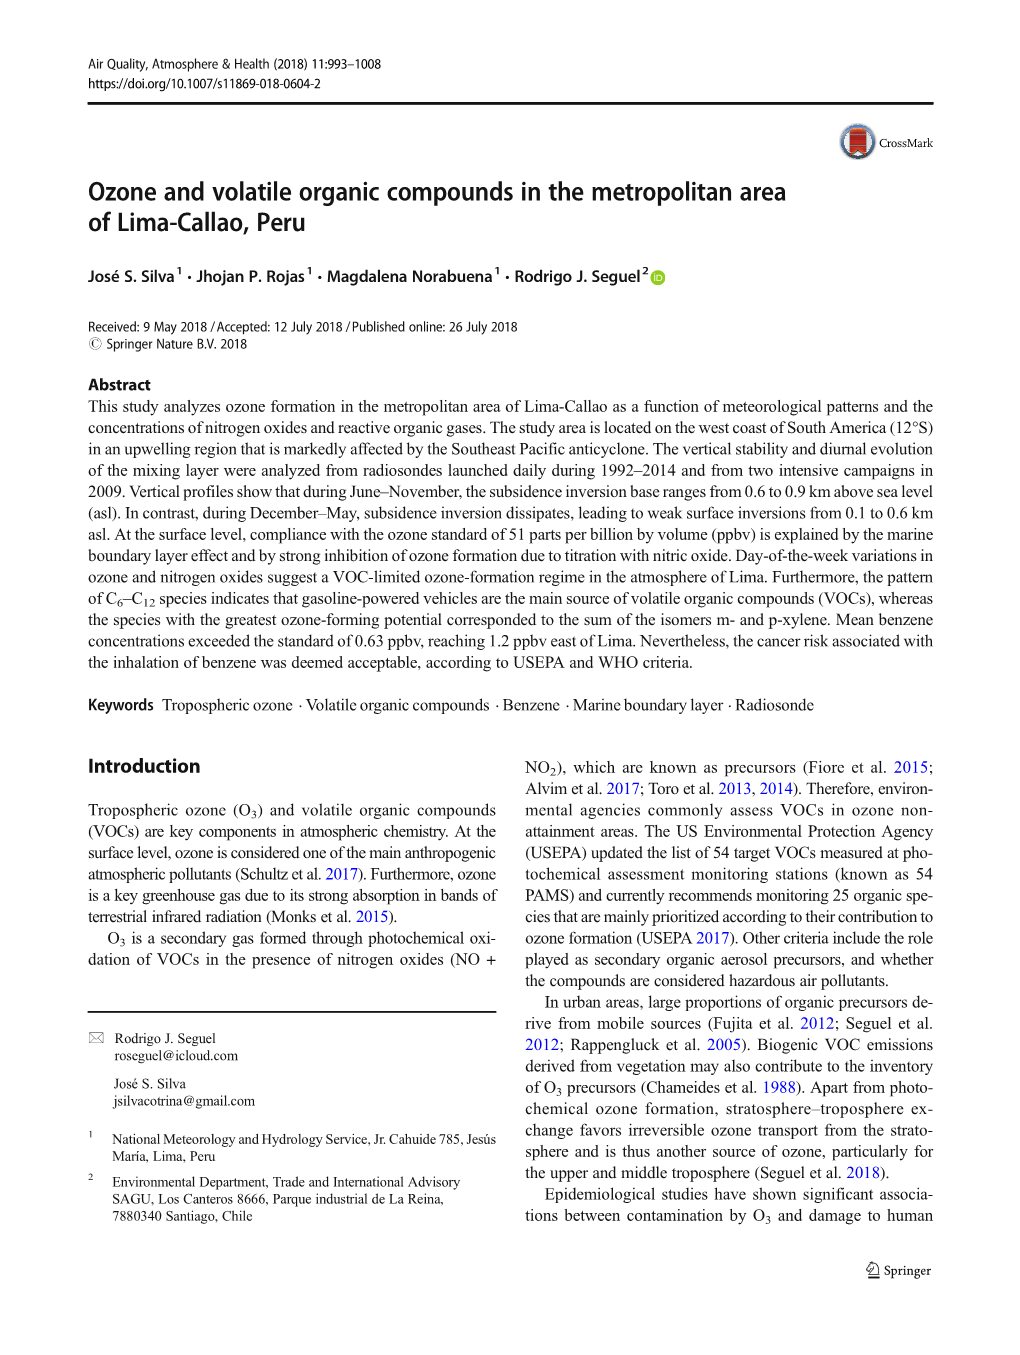 Ozone and Volatile Organic Compounds in the Metropolitan Area of Lima-Callao, Peru